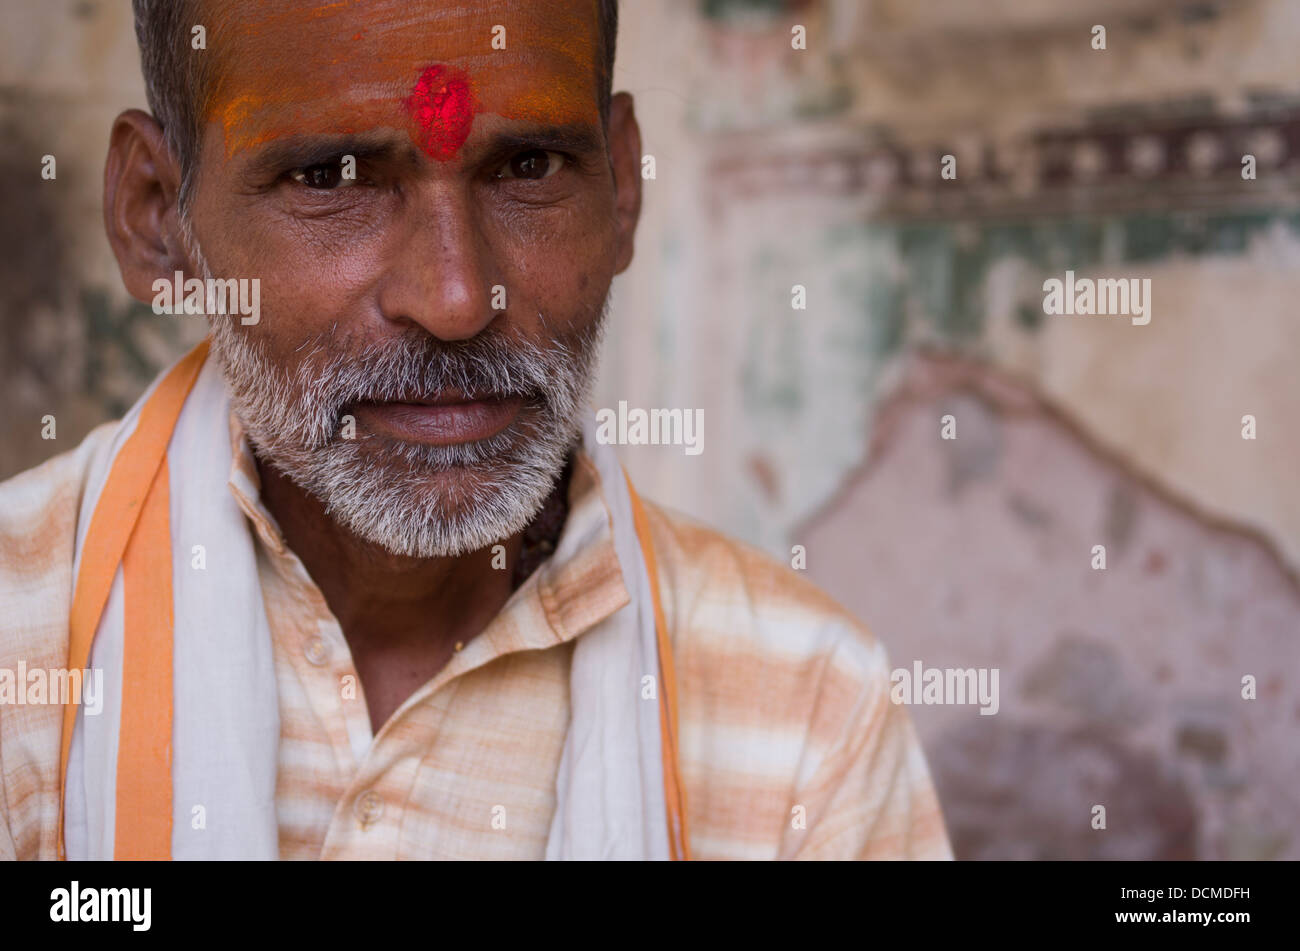 Hindu Mann mit Tilak auf Stirn und Bart Galta Affe Palace / Tempel - Jaipur, Rajasthan, Indien Stockfoto